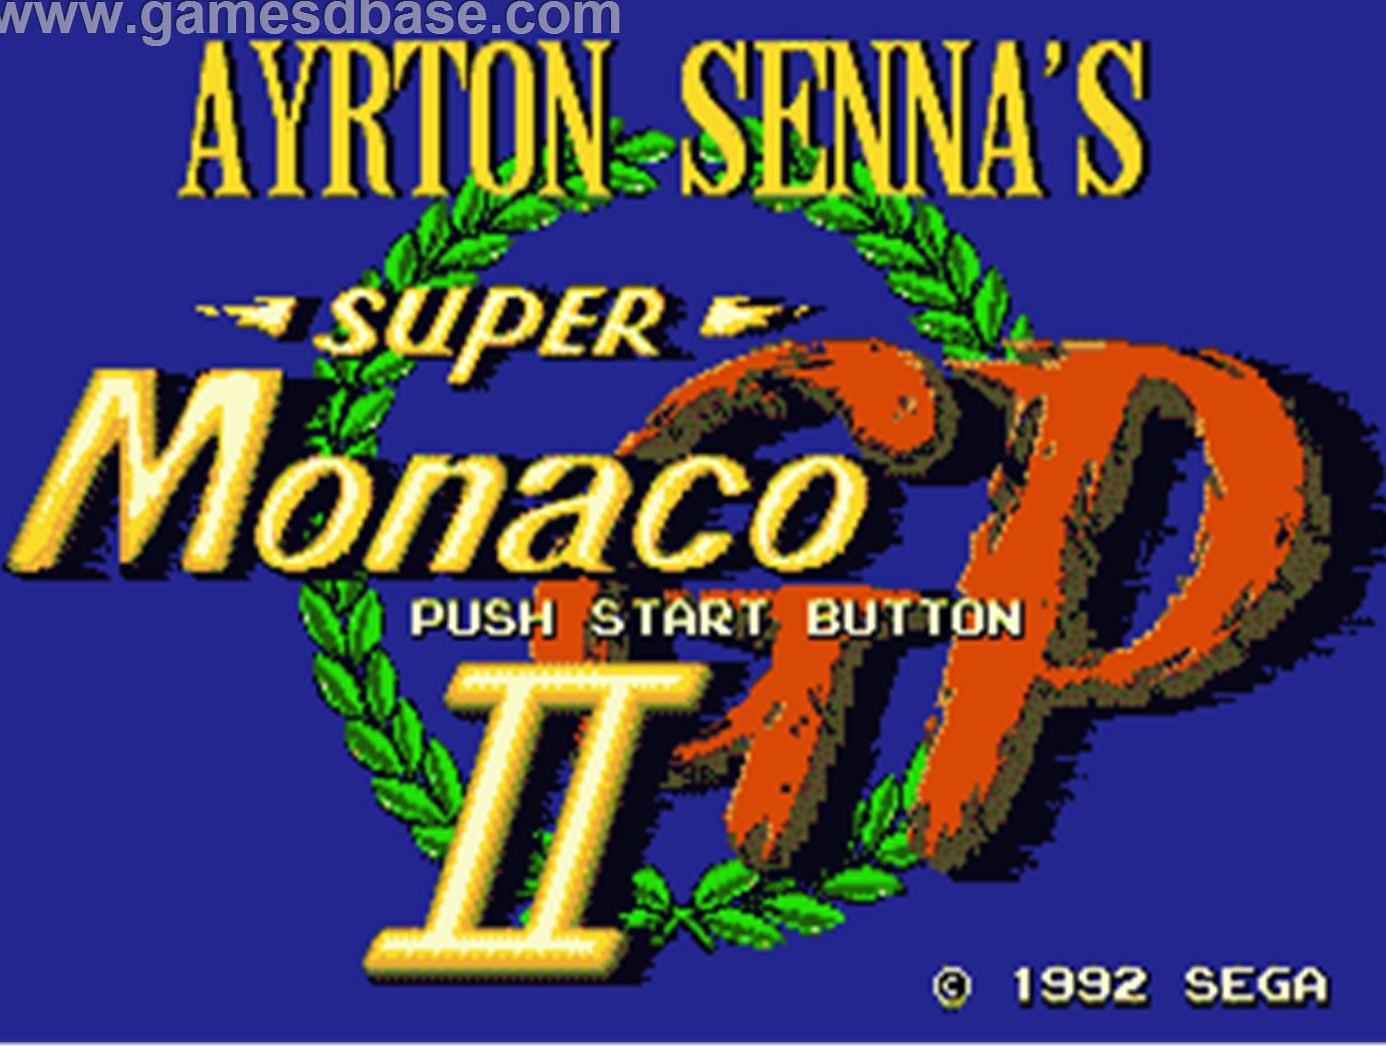 Ayrton_Senna-s_Super_Monaco_GP_2_-_1992_-_Sega (2).jpg